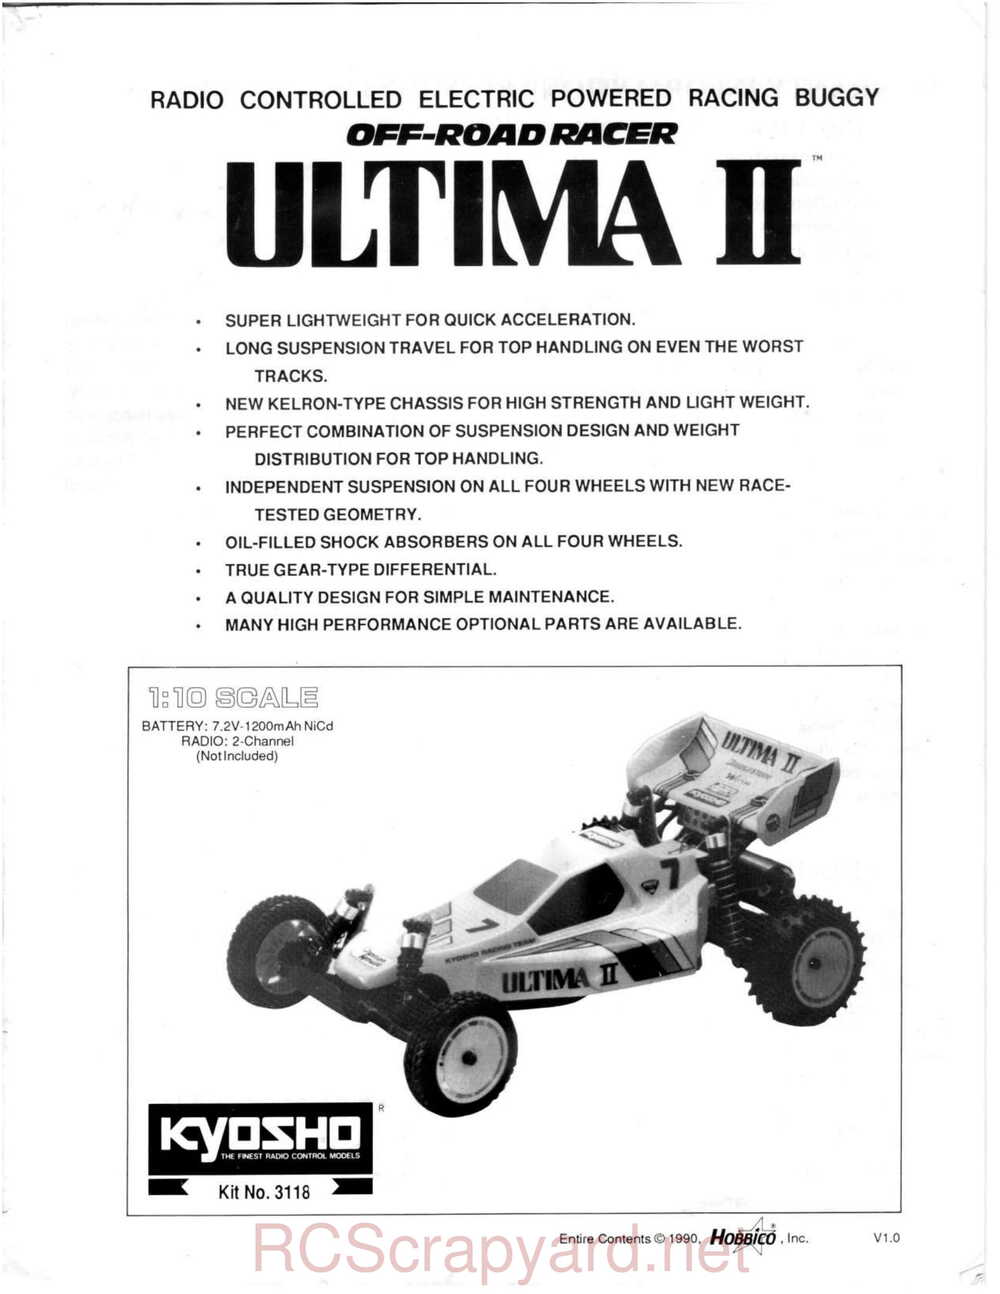 Kyosho - 3118 - Ultima-II - Manual - Page 01